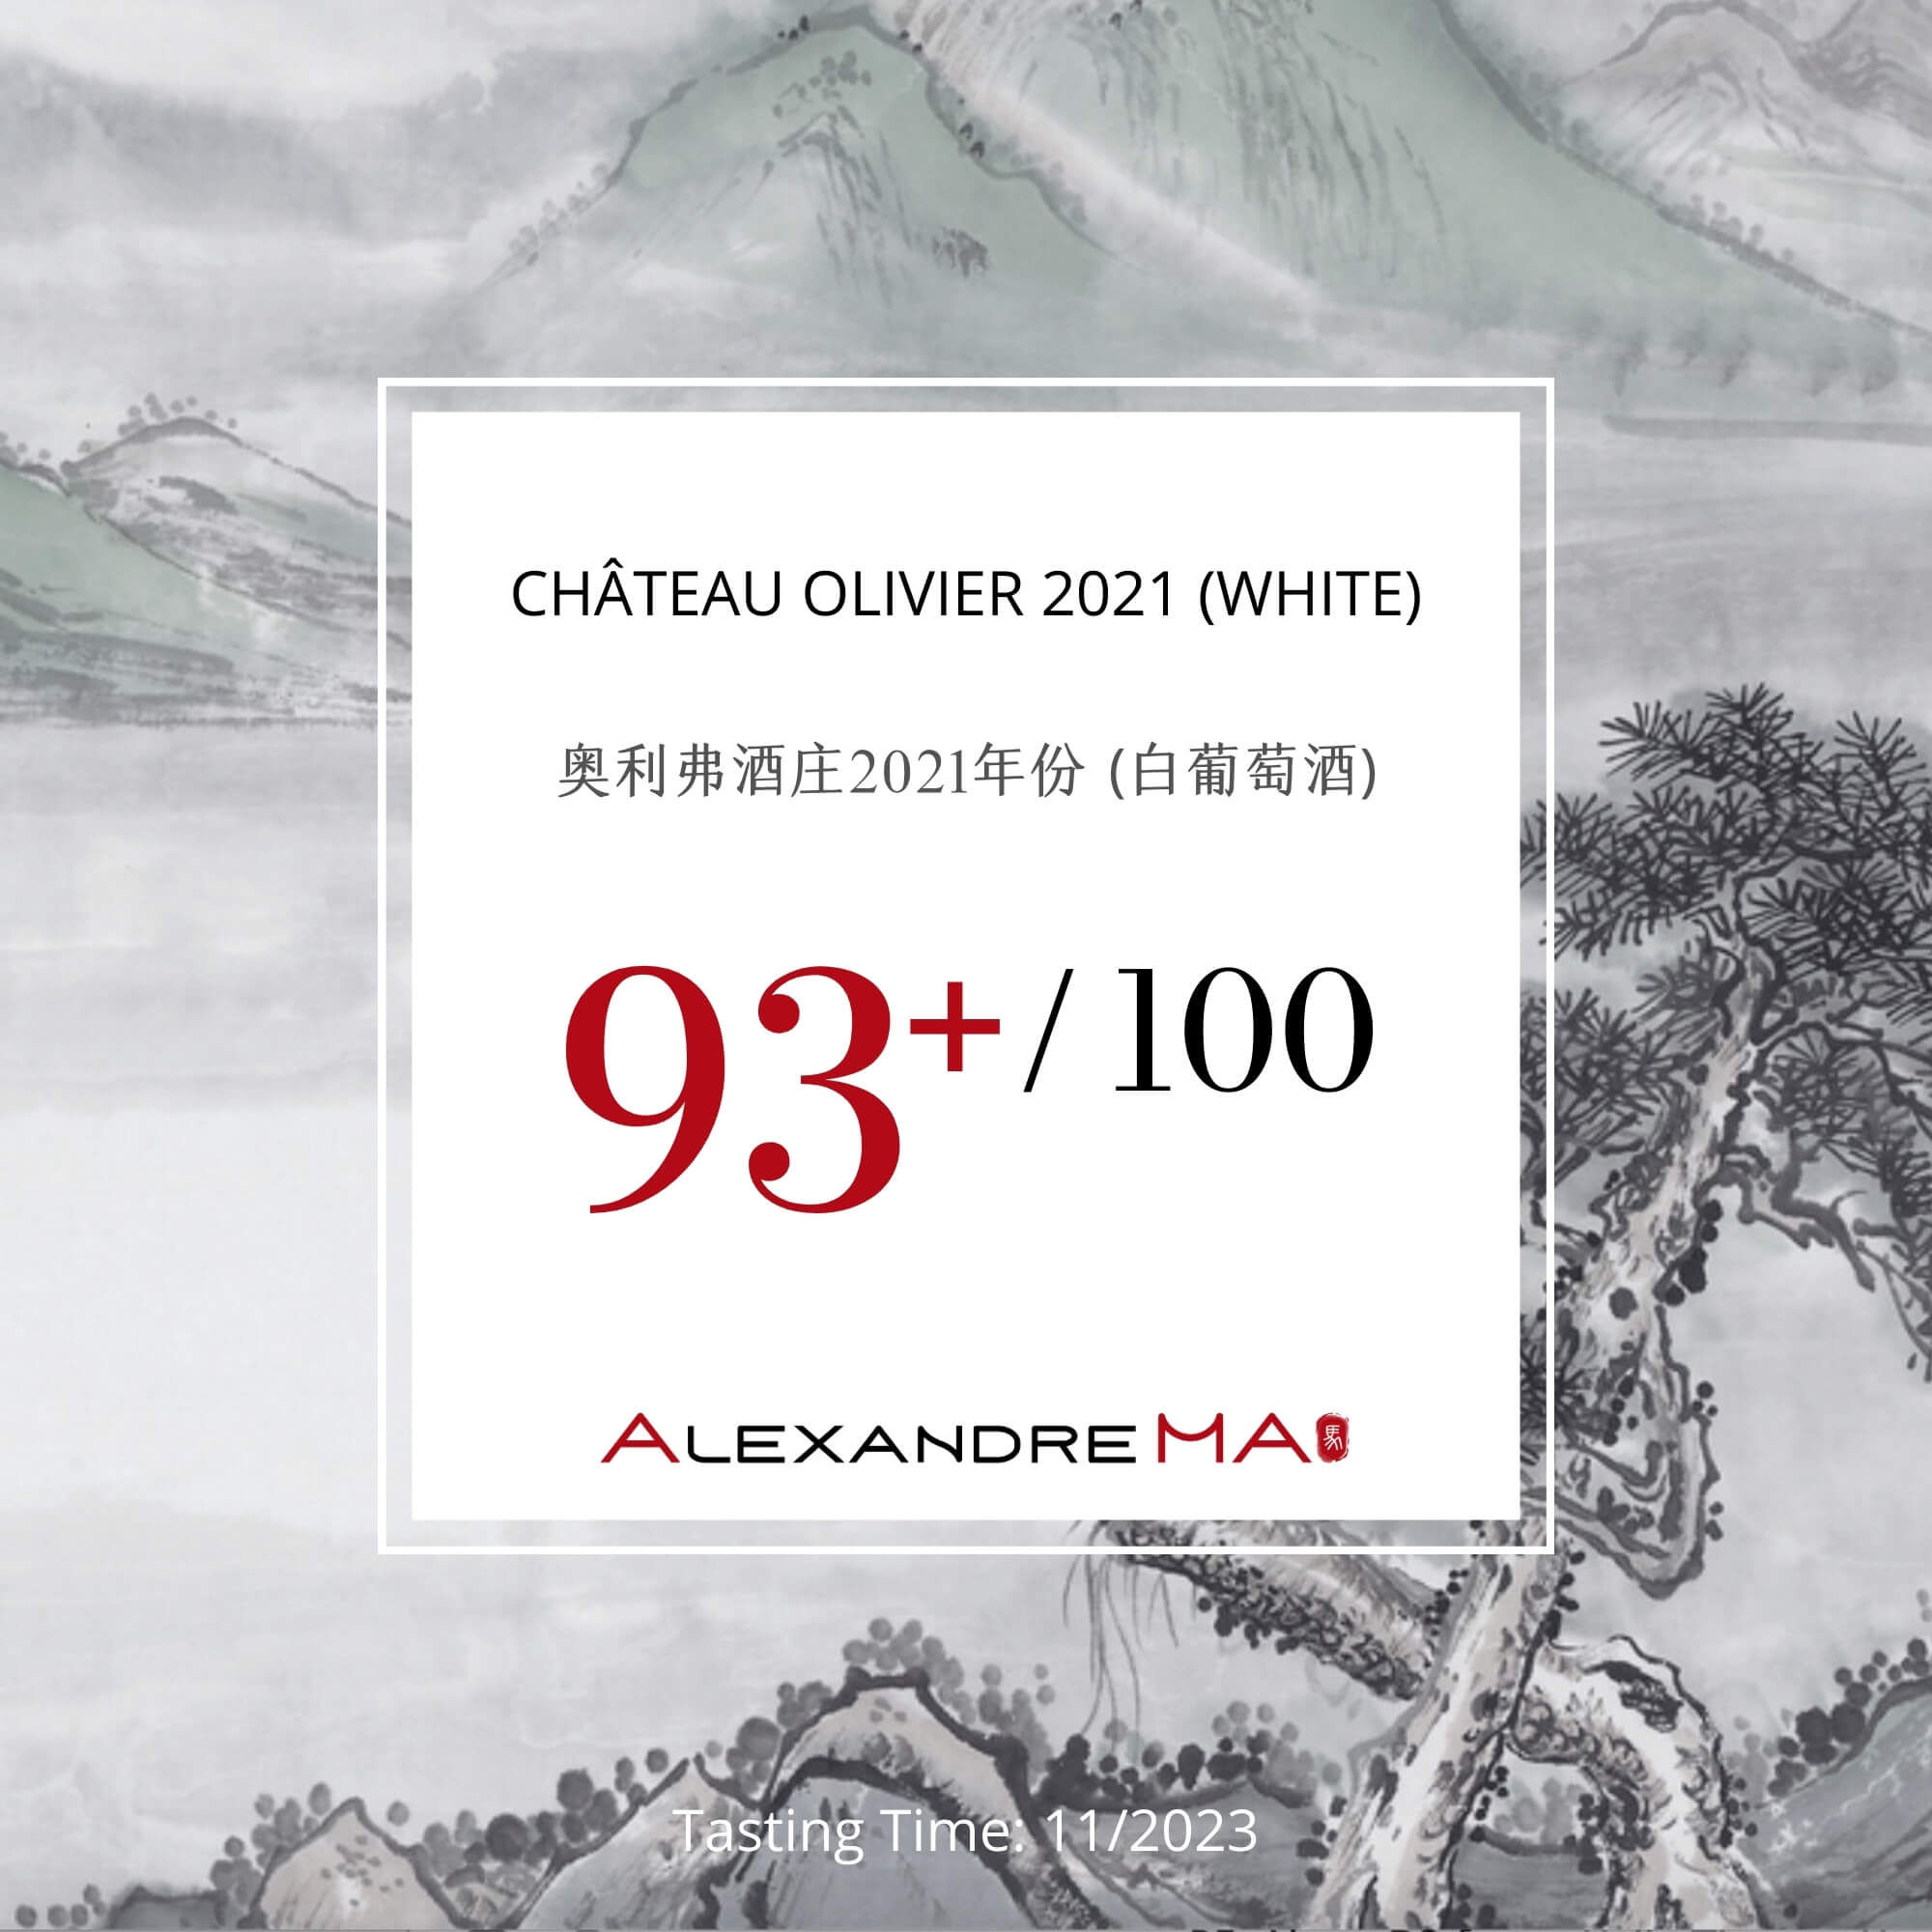 Château Olivier 2021-White - Alexandre MA